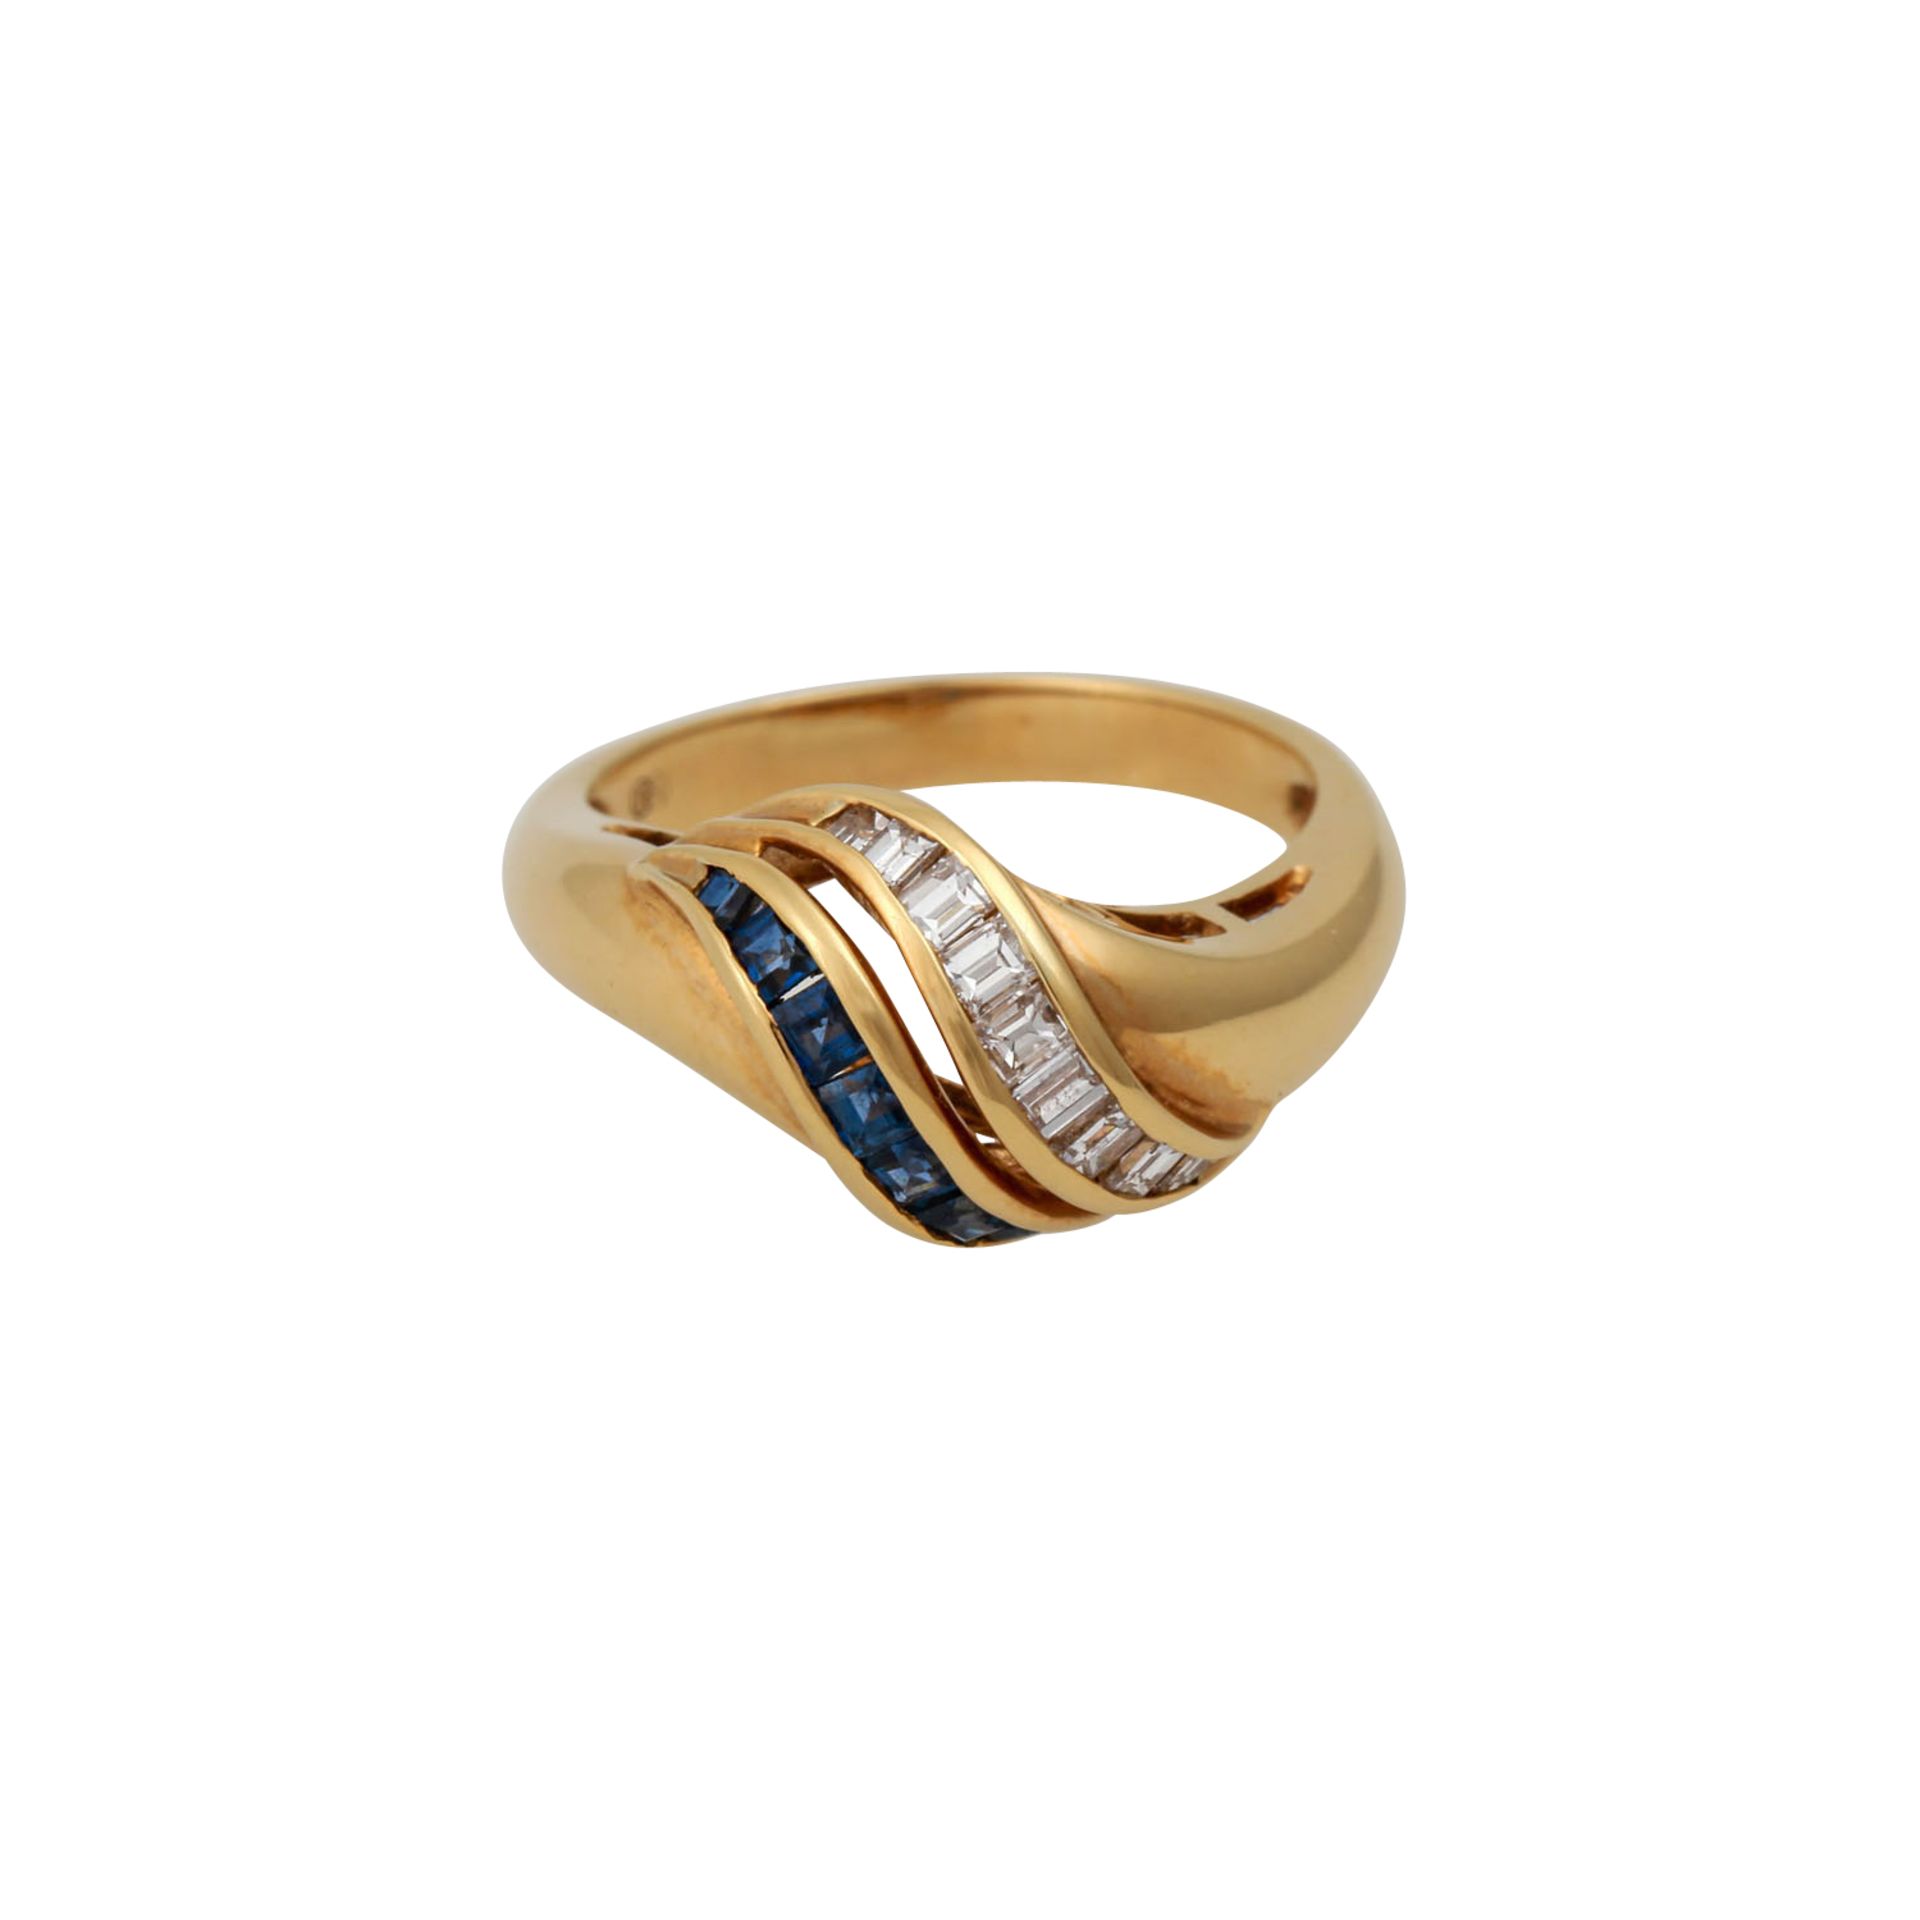 Ring mit Diamanten und Saphiren im Carréschliff,NP: 1.800 €, GG 18K, 4,9 g, RW: 52, Ende 20. Jh., - Bild 2 aus 4